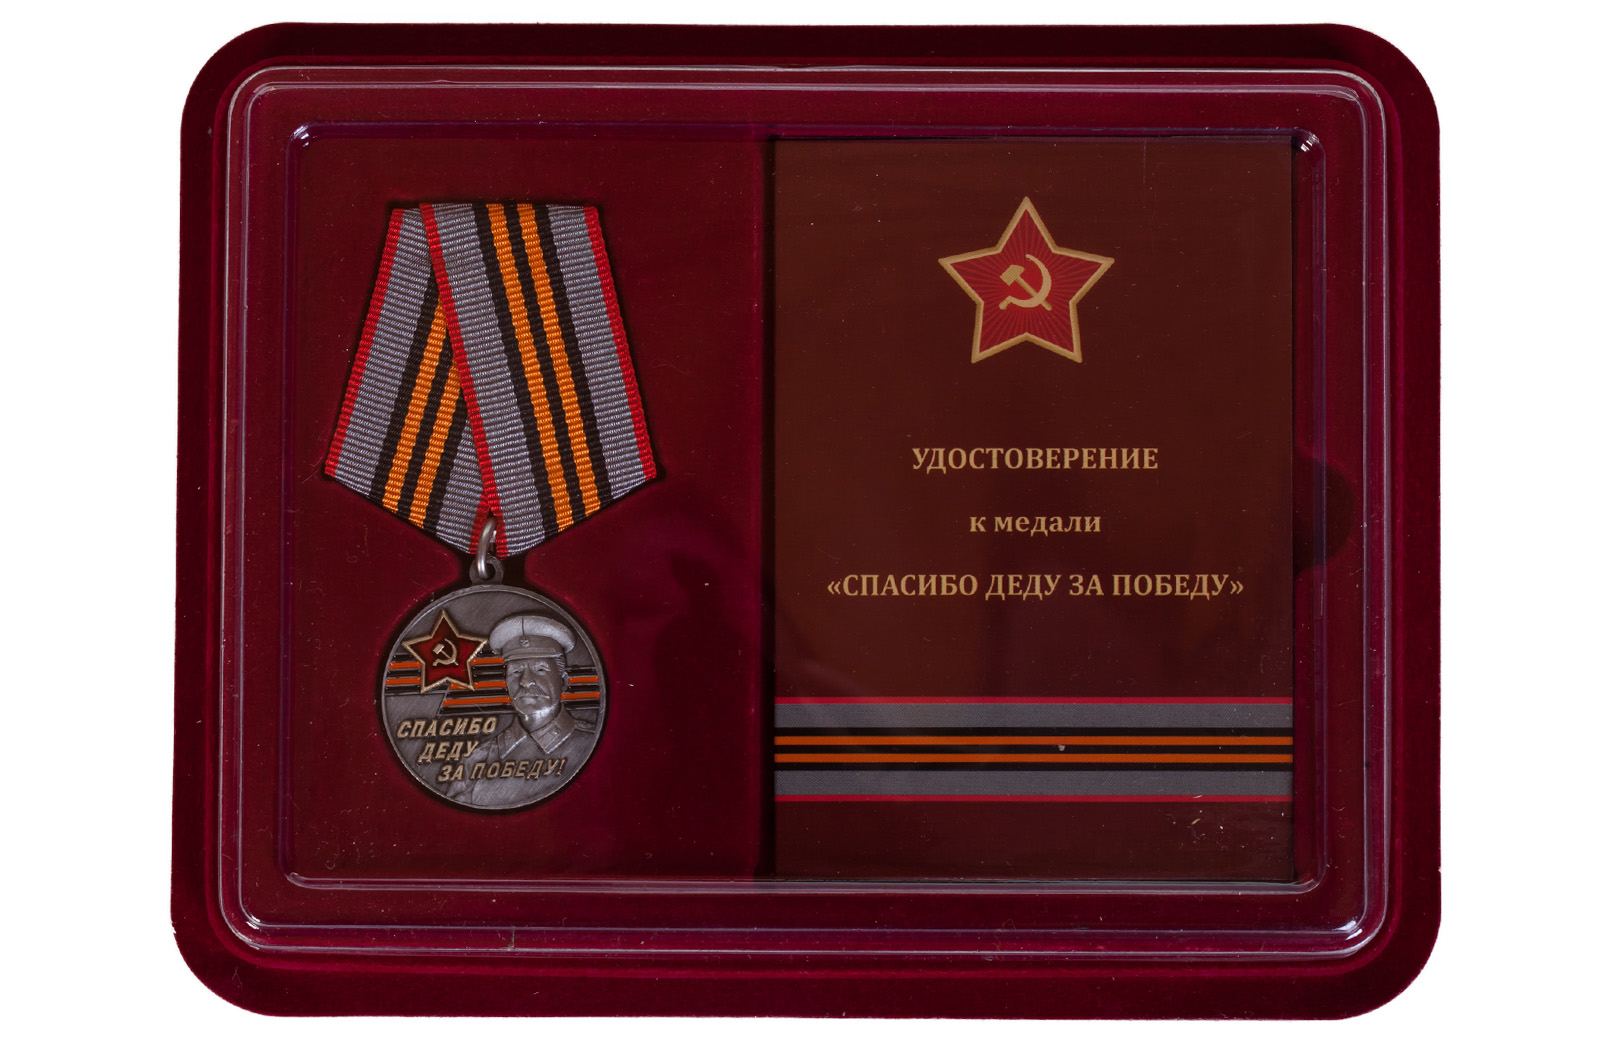 Купить латунную медаль к юбилею Победы в ВОВ За Родину! За Сталина! в подарок выгодно